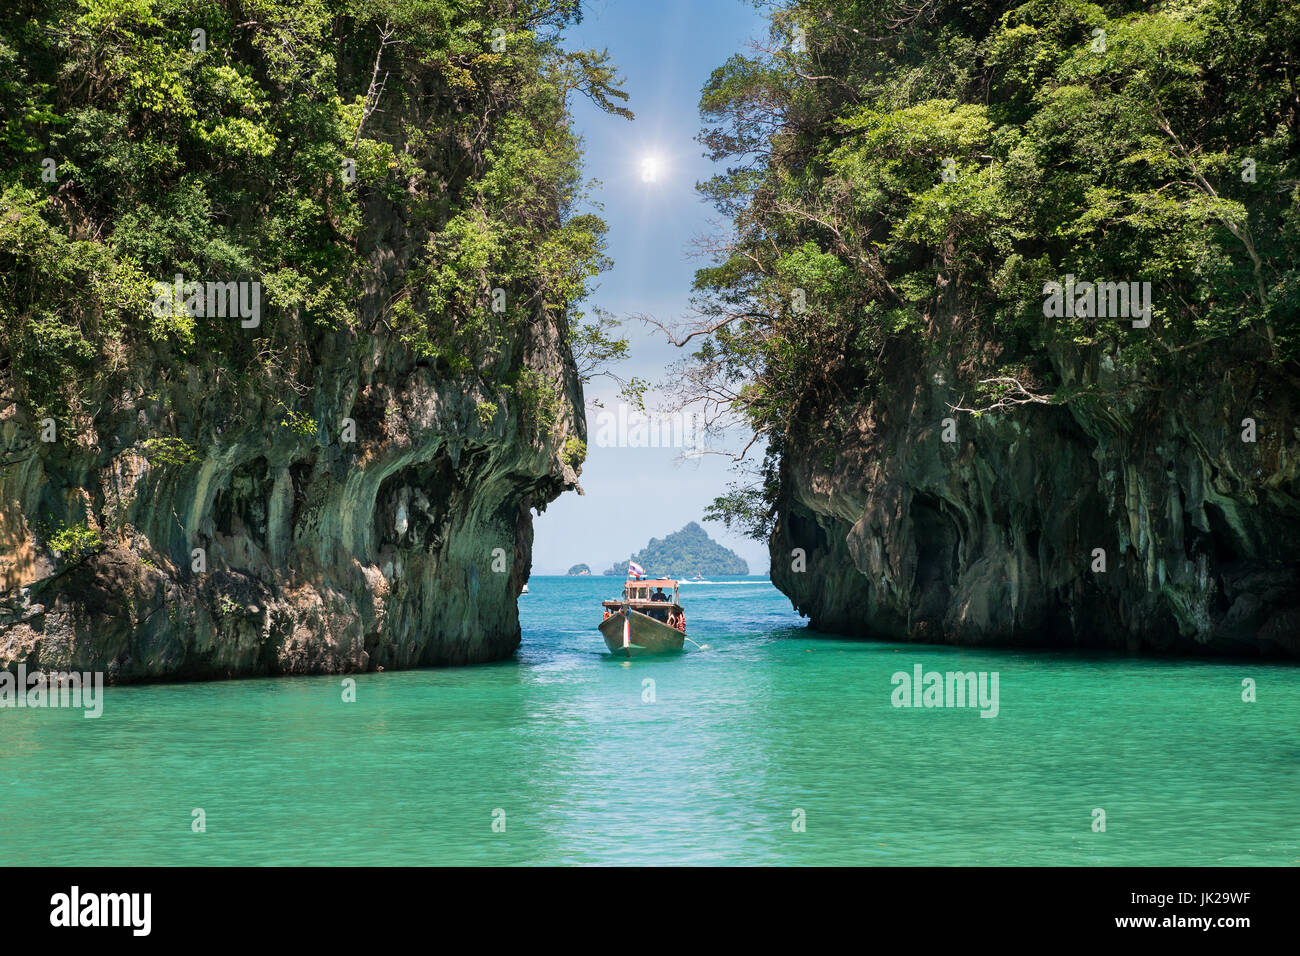 Schöne Landschaft der Felsen Berge und kristallklares Meer mit Longtail Boot in Phuket, Thailand. Sommer, Reisen, Urlaub, Urlaub Konzept. Stockfoto